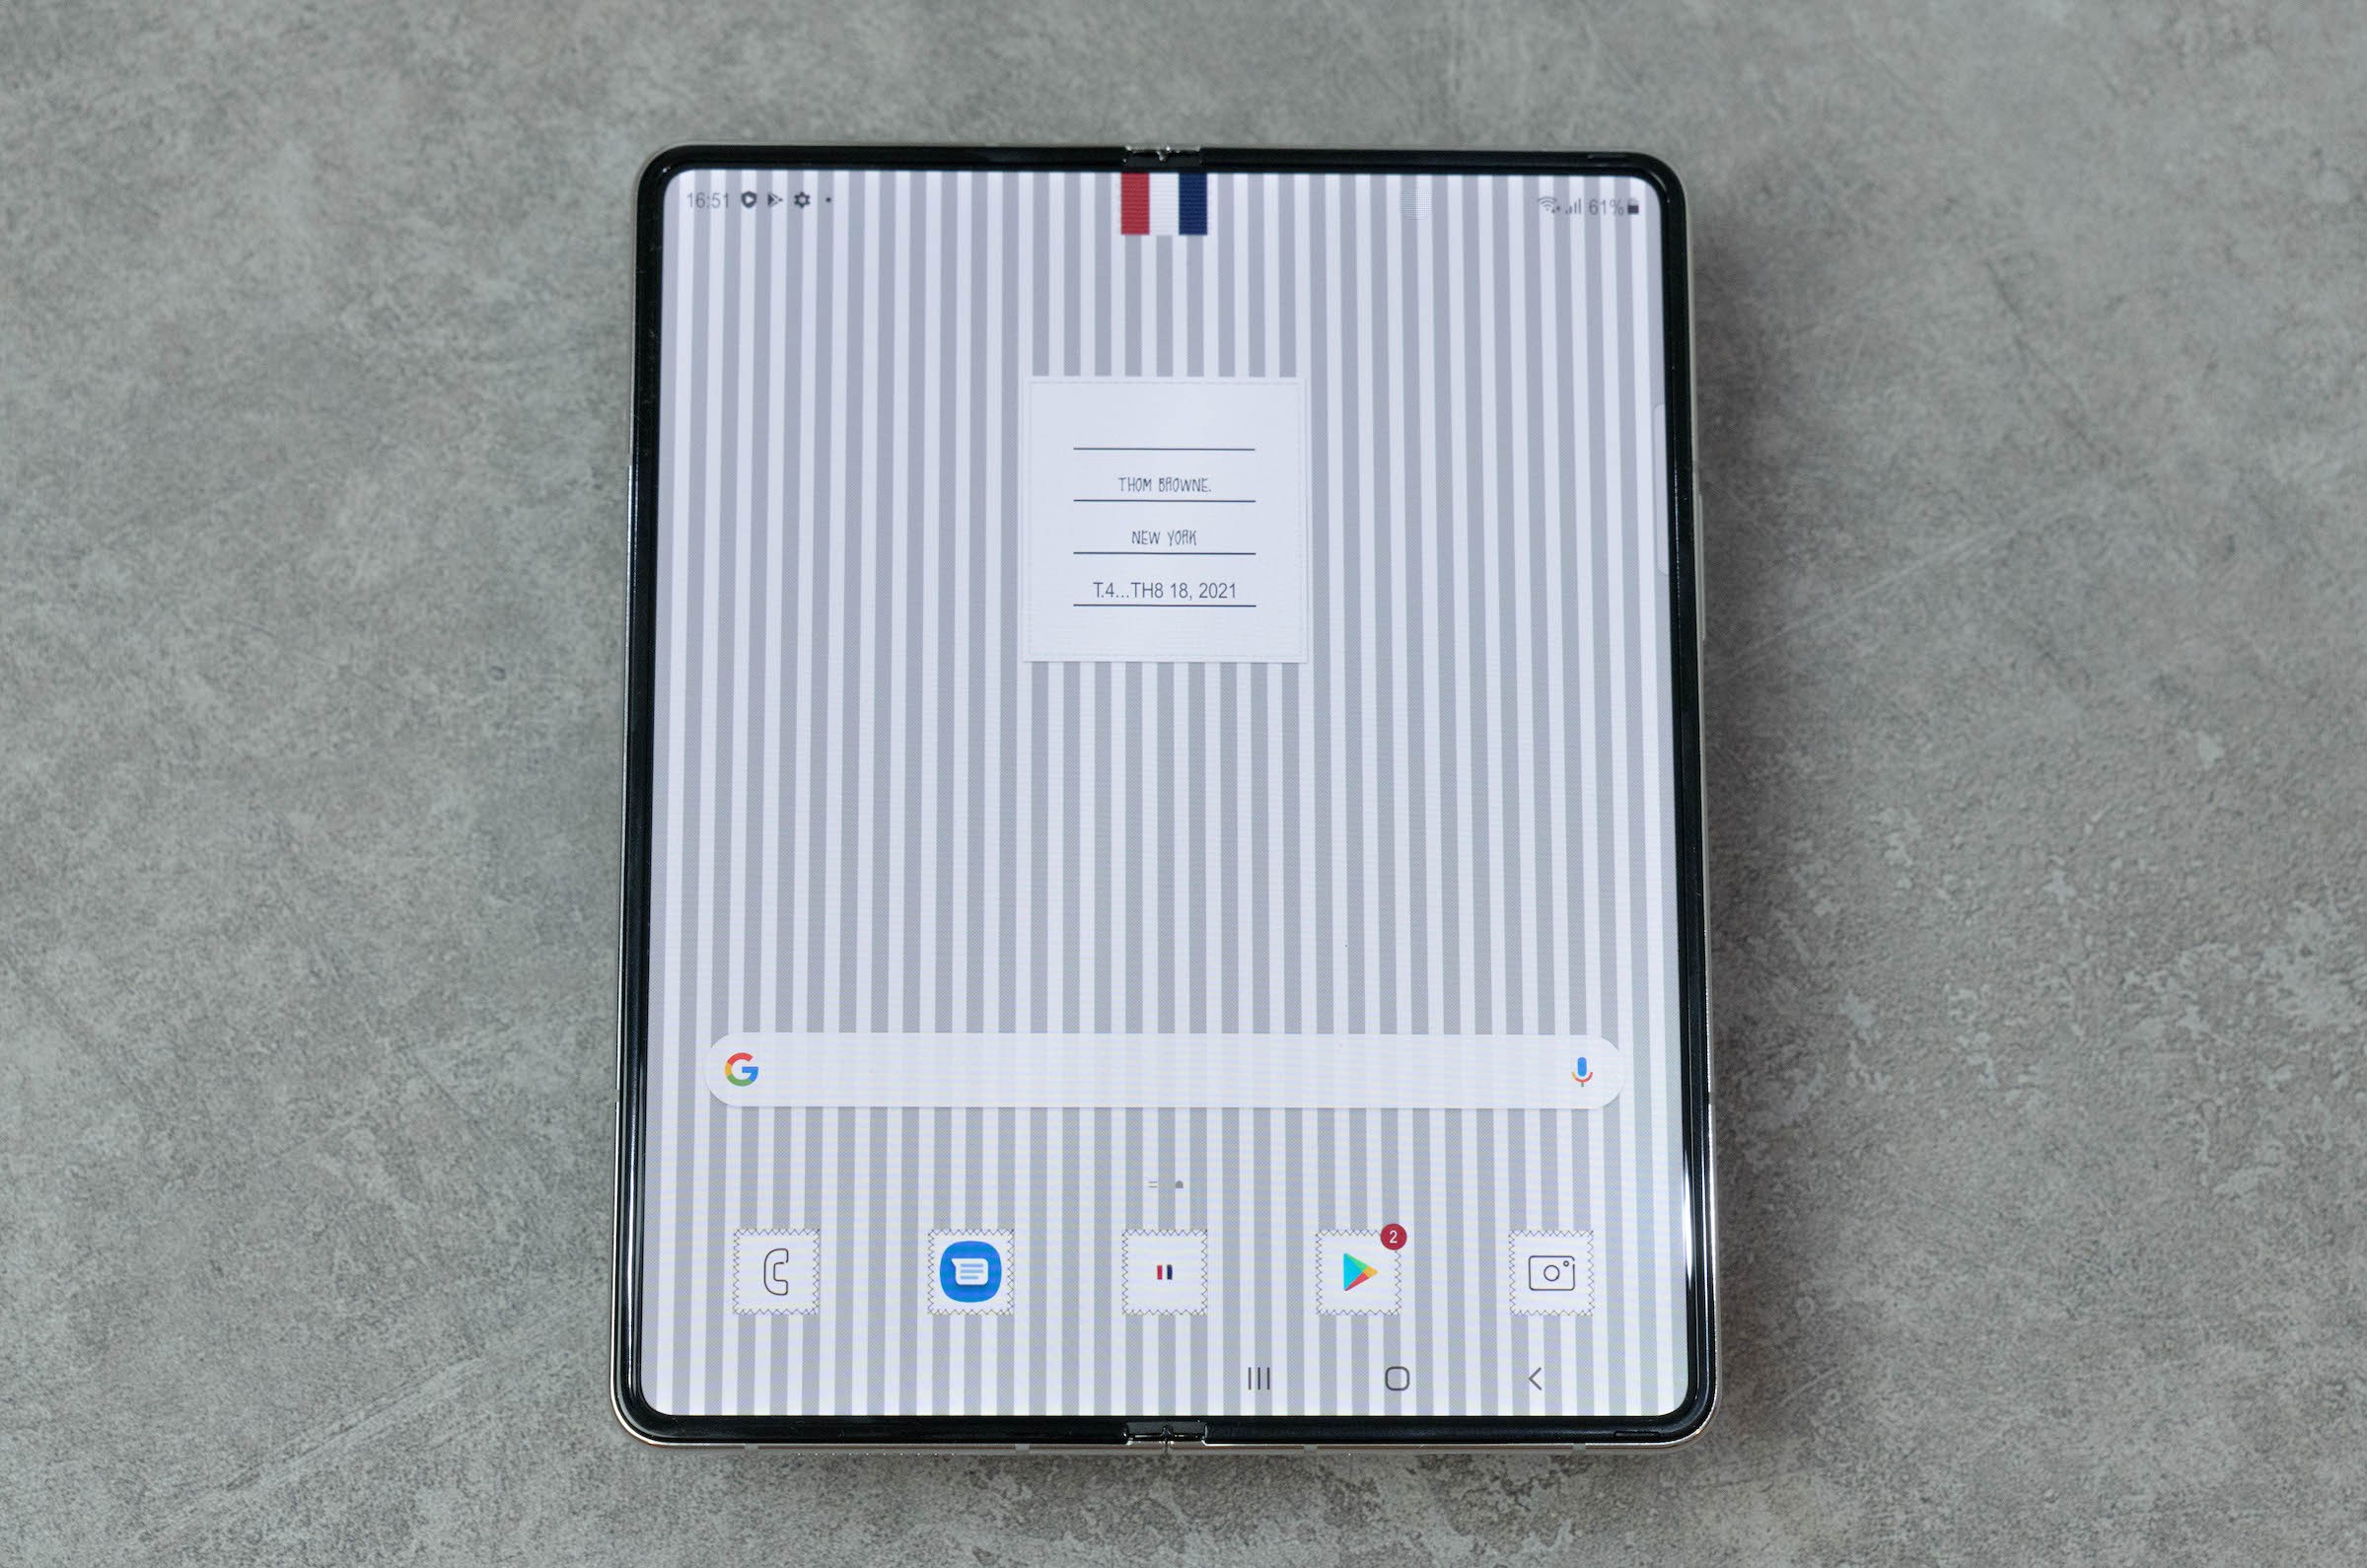 Bạn muốn sở hữu một chiếc điện thoại thông minh đột phá và tinh tế? Hãy chiêm ngưỡng hình nền Samsung Fold 4 - một cỗ máy công nghệ đặc biệt với thiết kế độc đáo và đầy màu sắc, đem lại sự lôi cuốn và chú ý đến từ những người xung quanh.